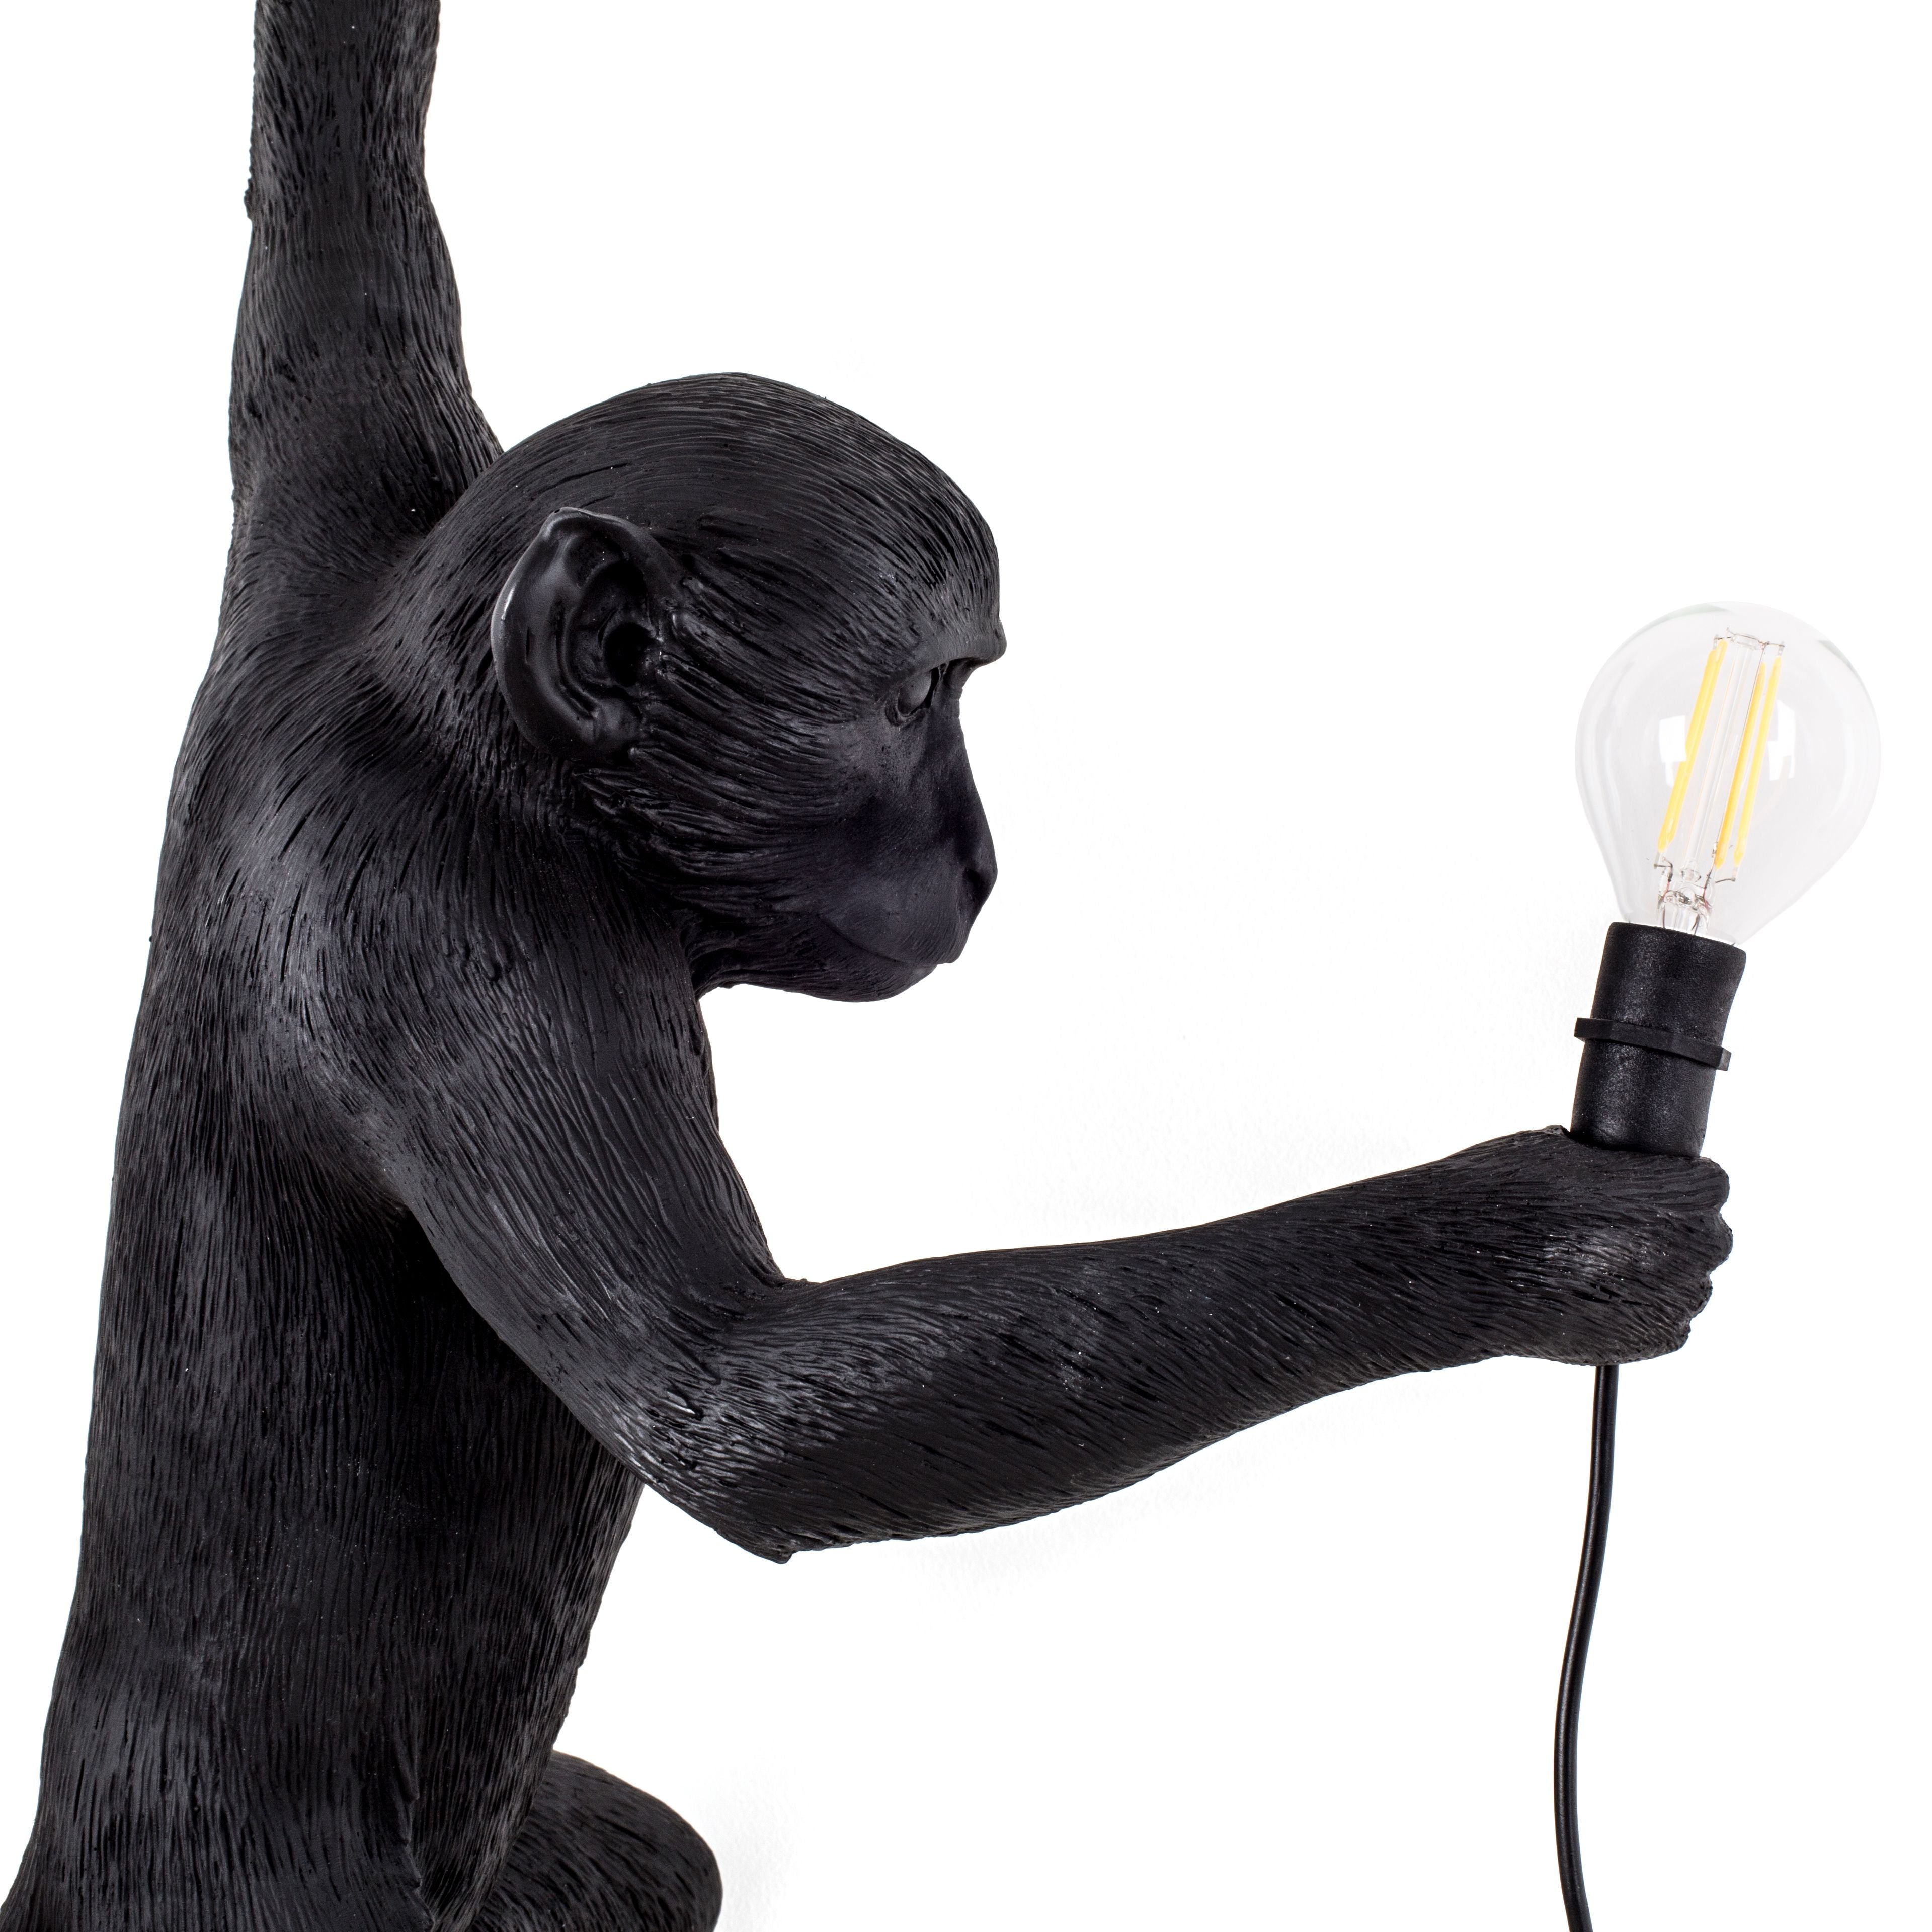 Lampka zewnętrzna Seletti Monkey Black, wisząca lewa ręka